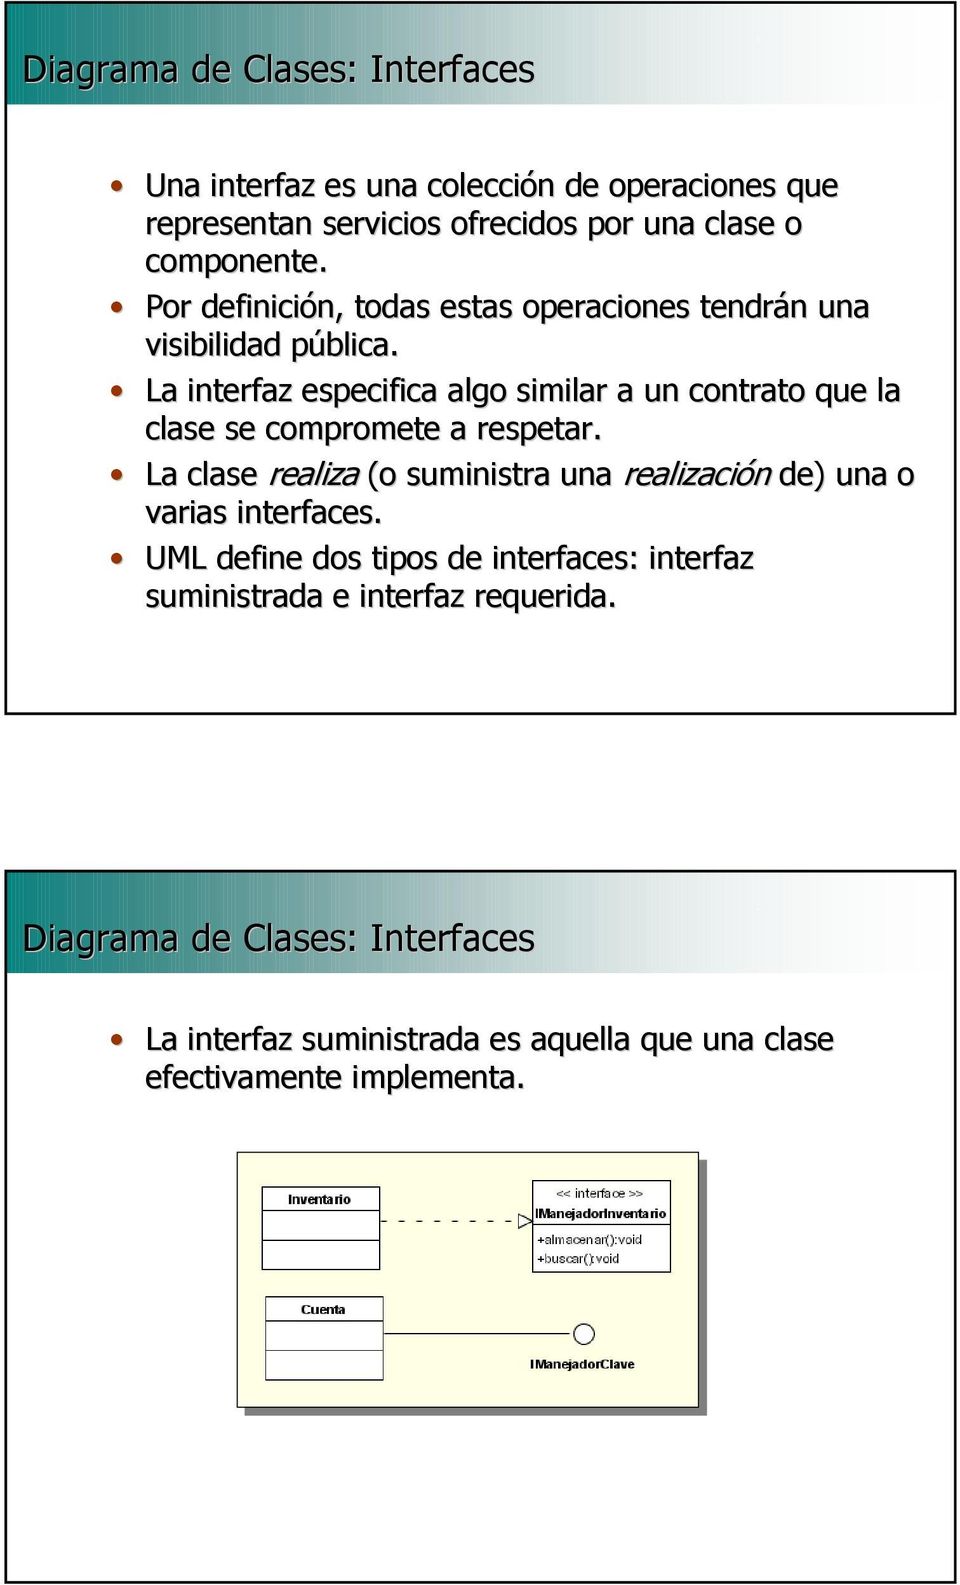 La interfaz especifica algo similar a un contrato que la clase se compromete a respetar.